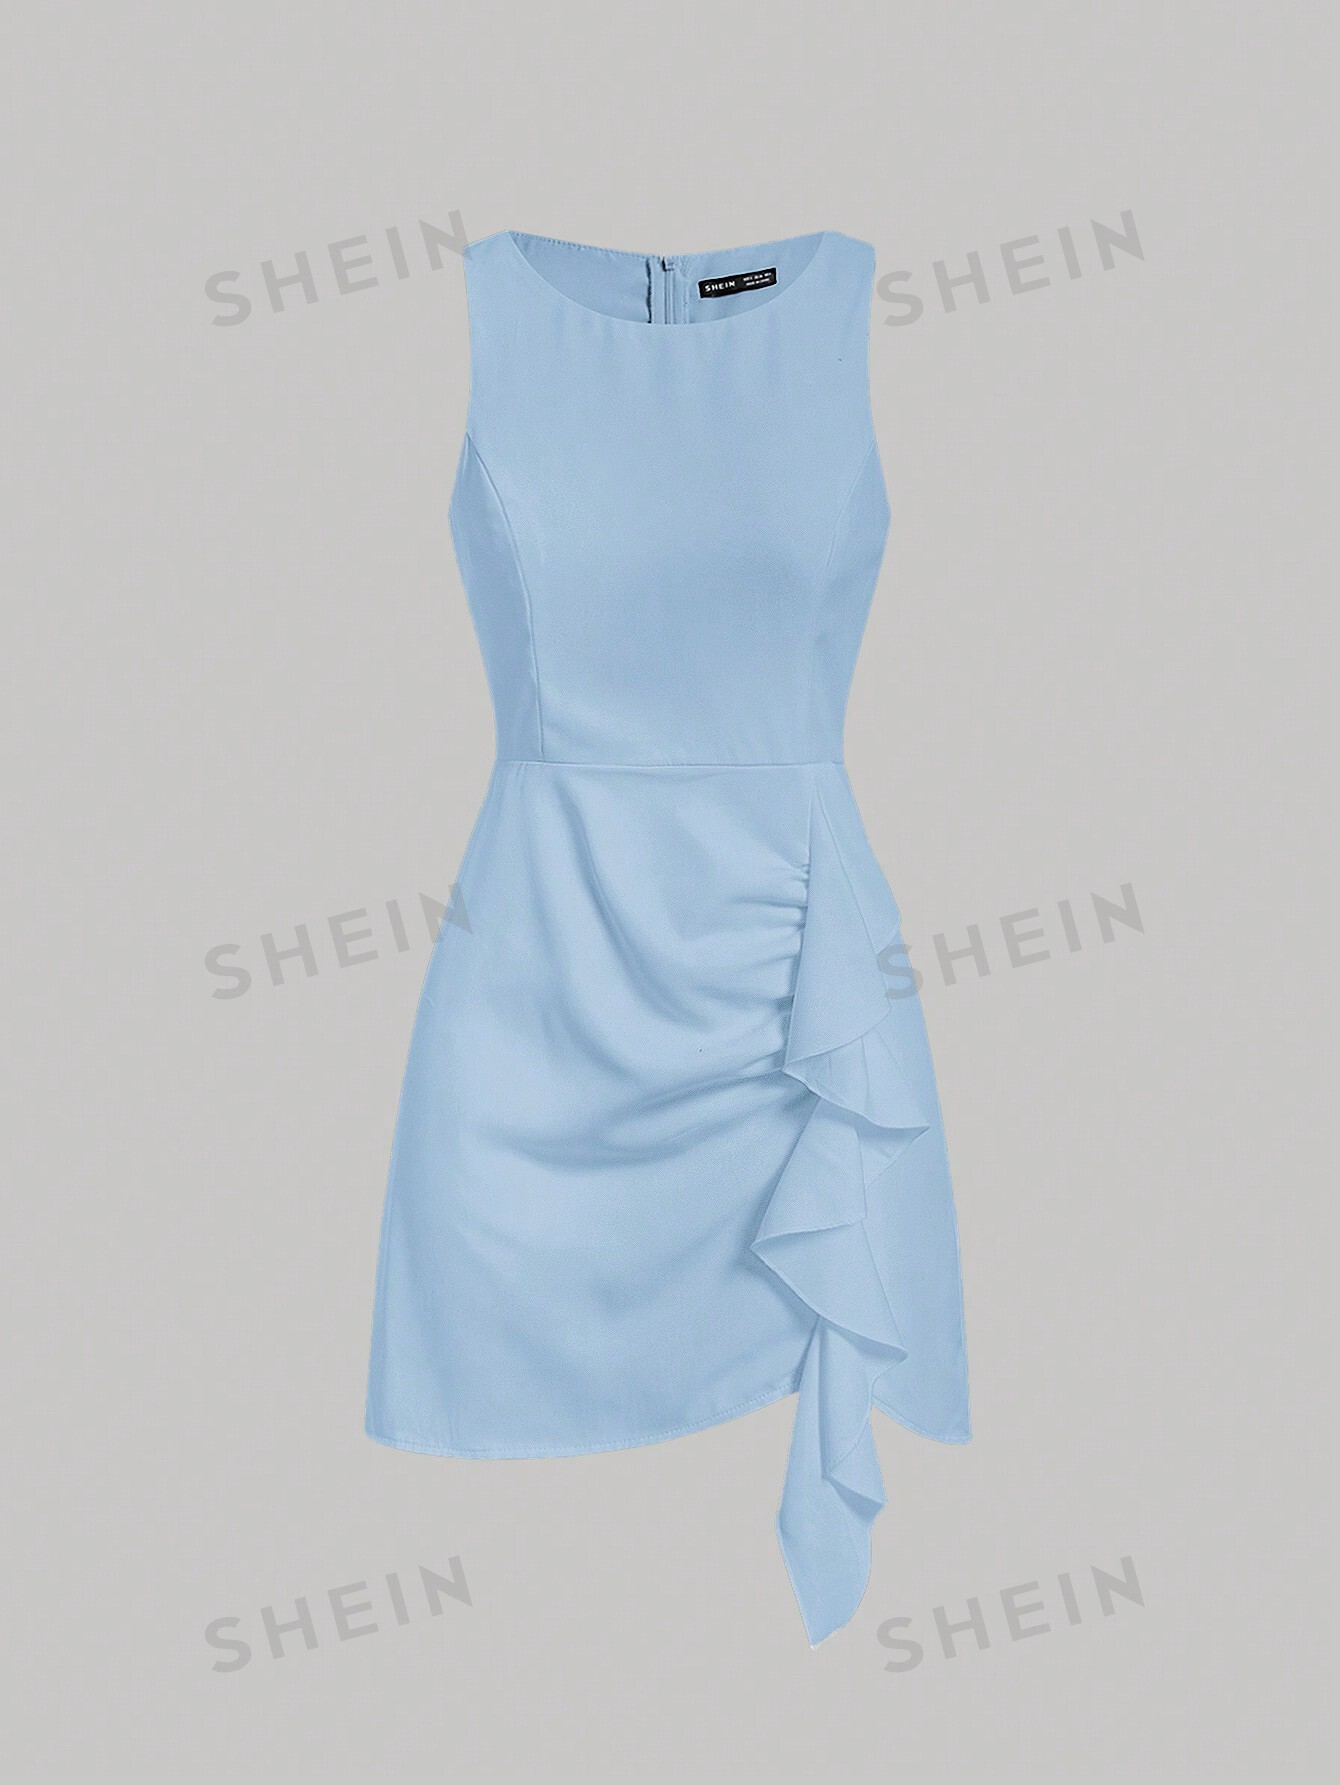 SHEIN MOD однотонное платье-жилет без рукавов с бретелькой на шее и рюшами, голубые